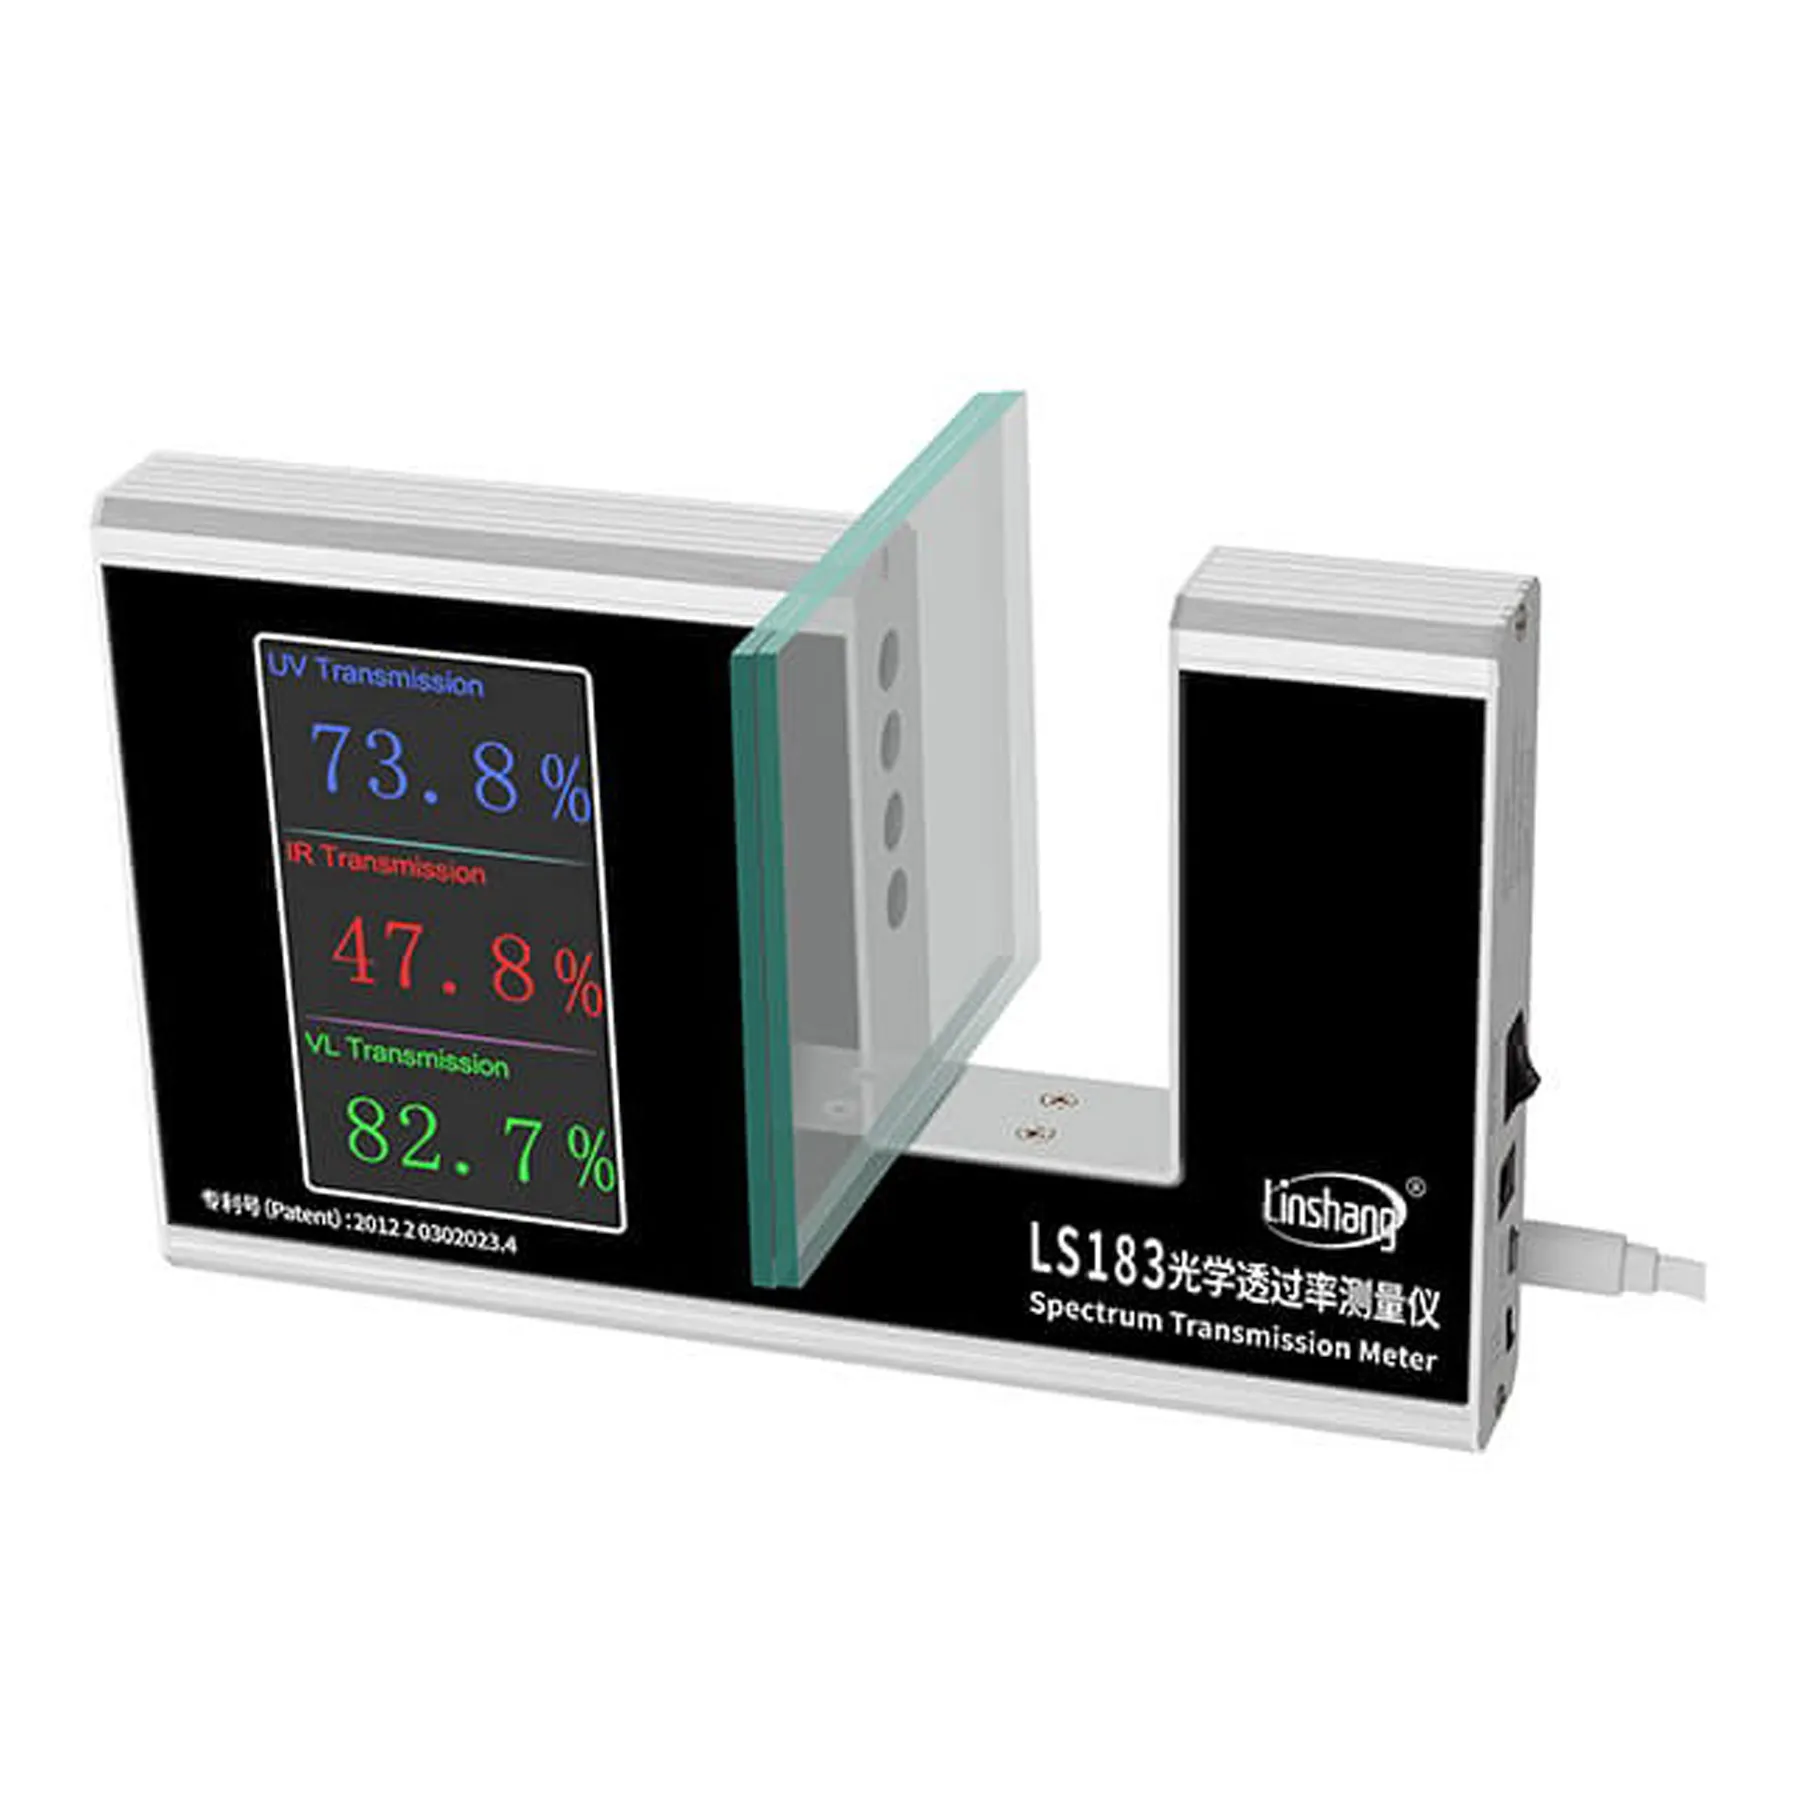 Spektrum Transmission Meter LS183 Licht Transmission Meter UV IR VL Transmission Tester